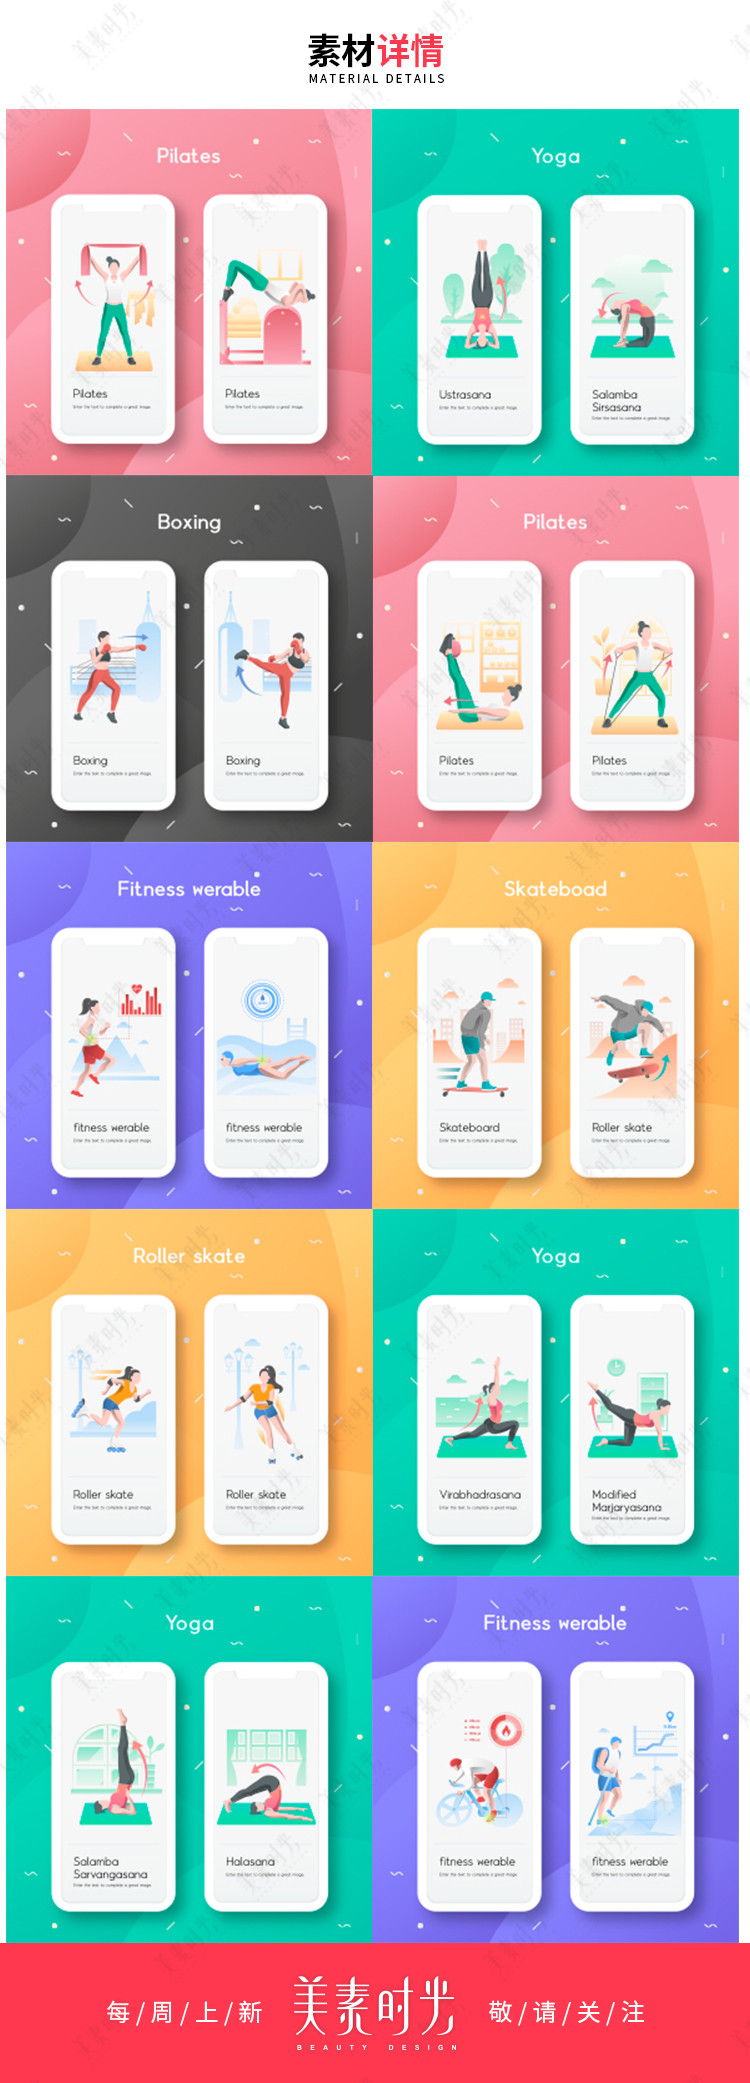 【UI设计】扁平化瑜伽游泳登山健身插画运动APP